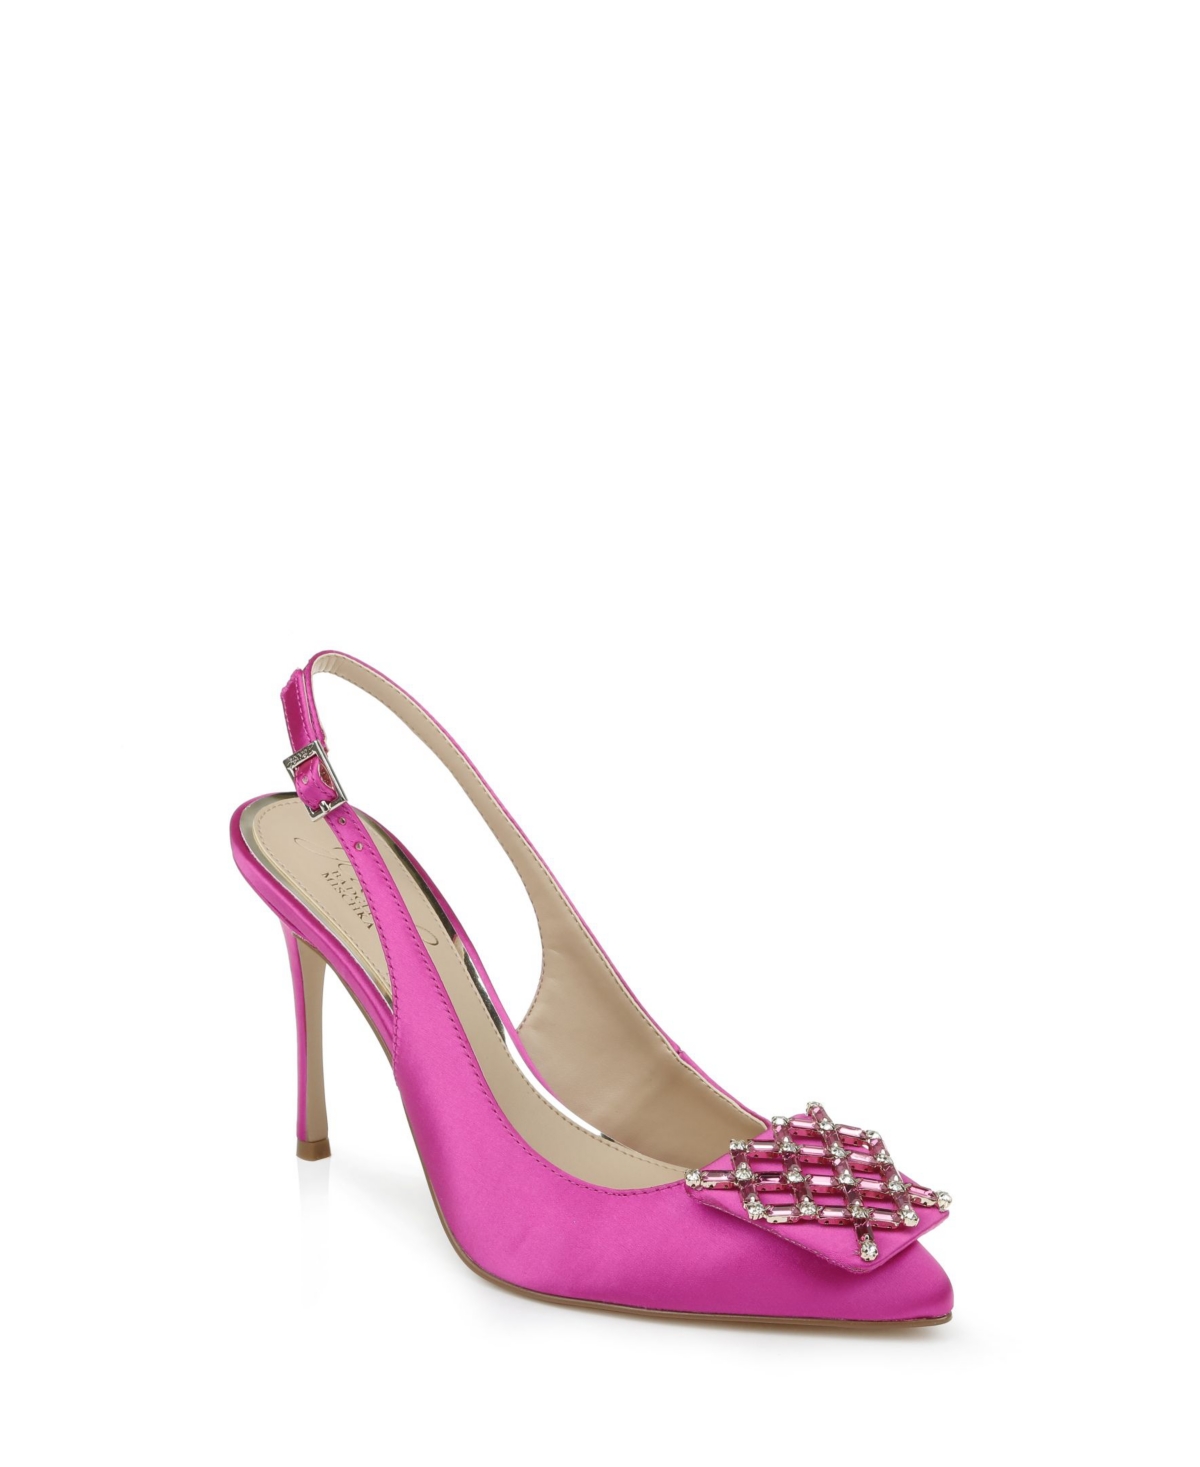 Jewel Badgley Mischka Women's Lisbet Slingback Dress Pumps Women's Shoes In Neon Pink Satin